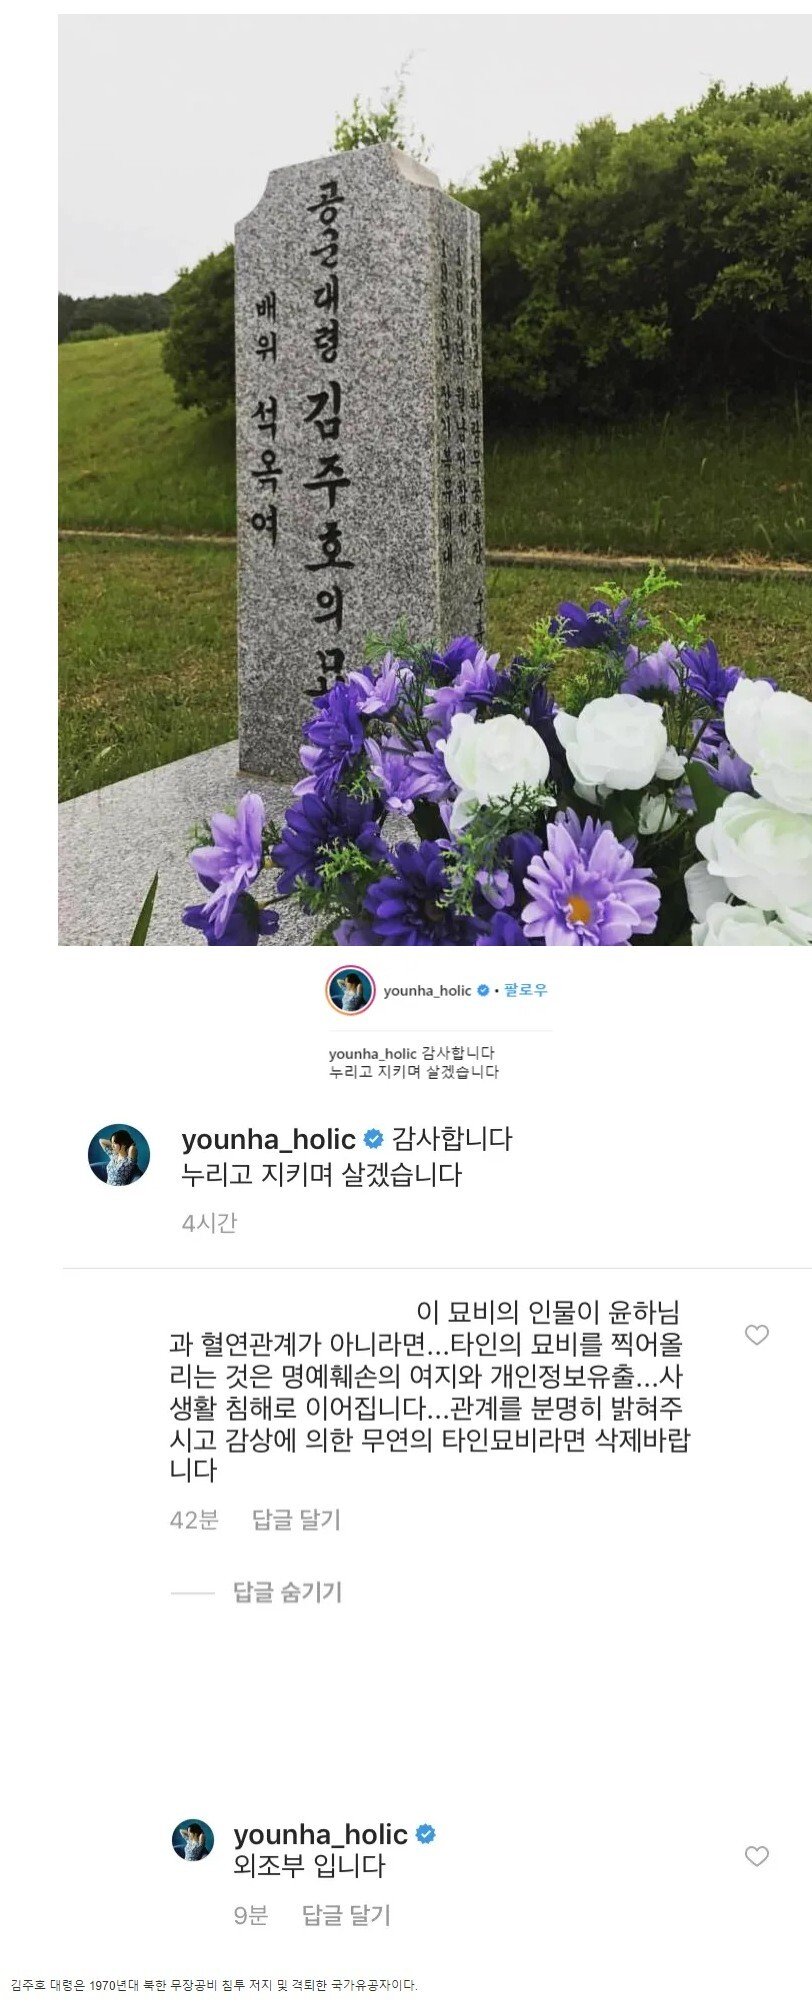 윤하가 올린 사진에 레전드 댓글